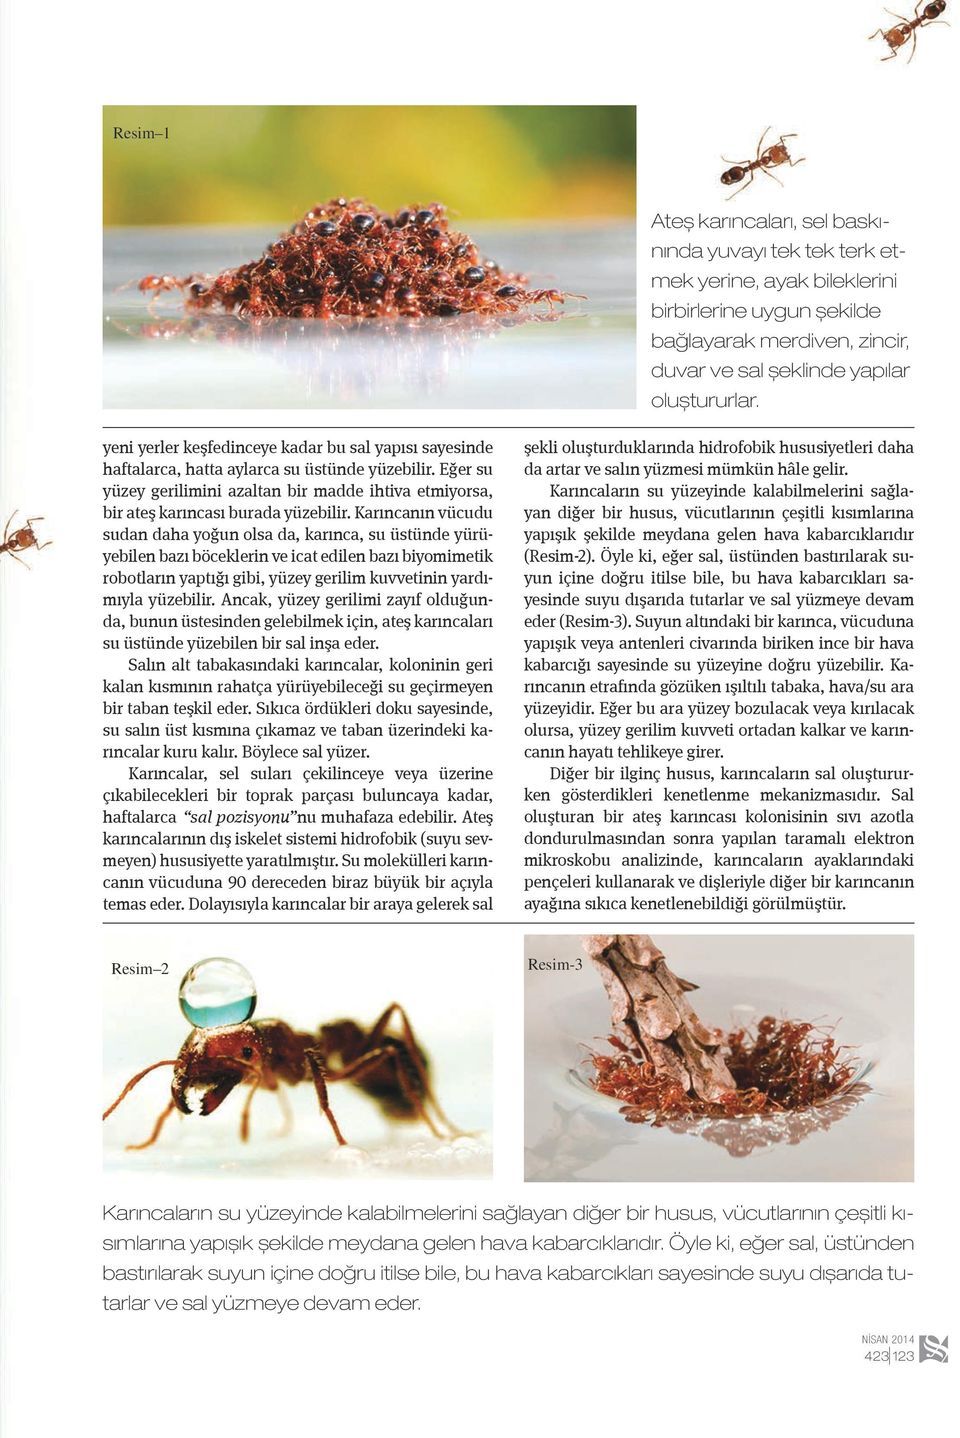 Karıncanın vücudu sudan daha yoğun olsa da, karınca, su üstünde yürüyebilen bazı böceklerin ve icat edilen bazı biyomimetik robotların yaptığı gibi, yüzey gerilim kuvvetinin yardımıyla yüzebilir.